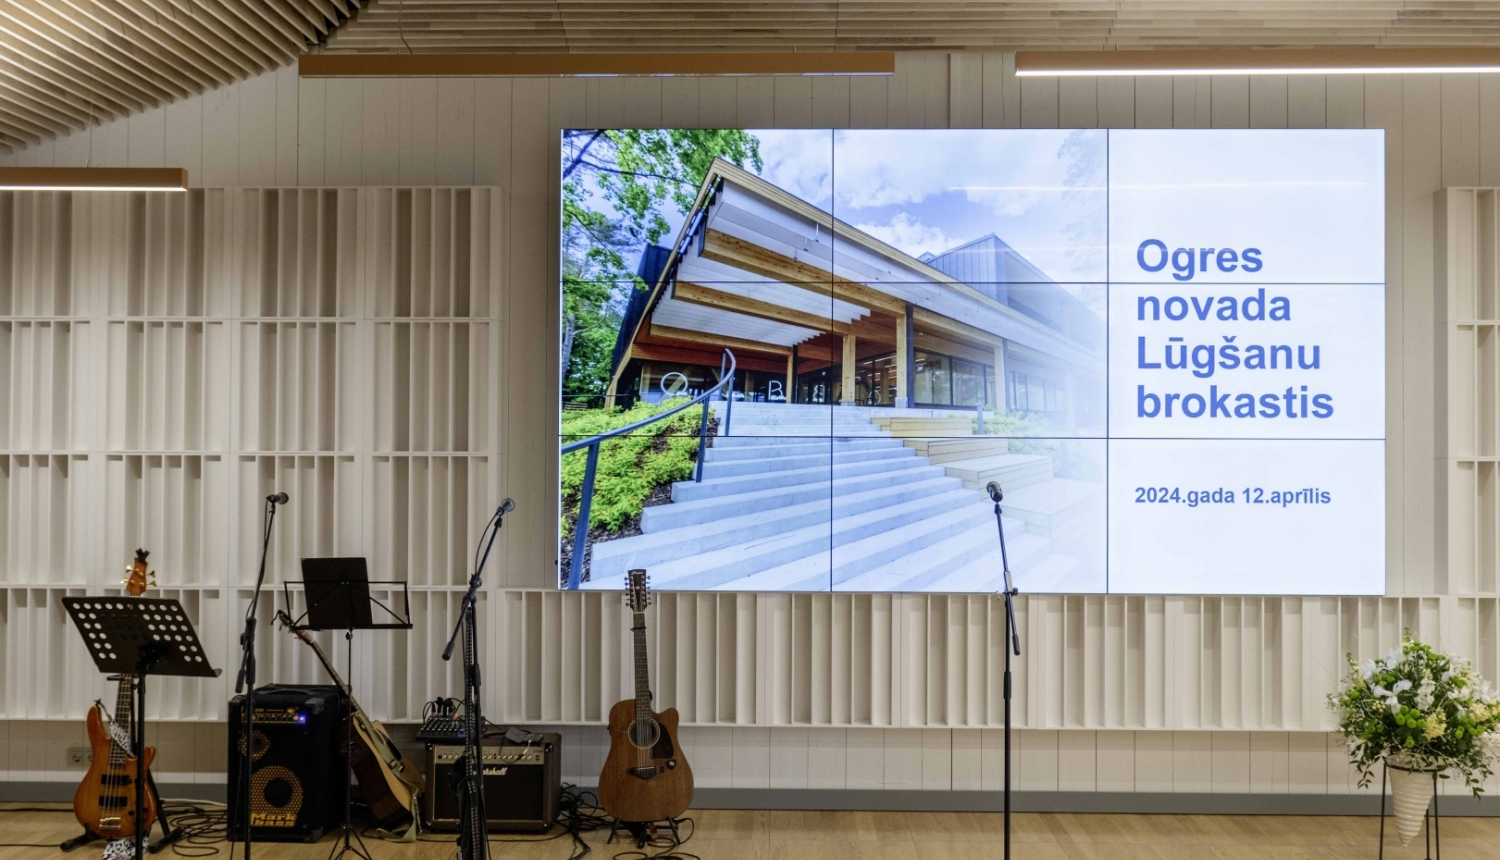 Ogres Centrālās bibliotēkas konferenču zāle ar Lūgšanu brokastu prezentāciju uz ekrāna